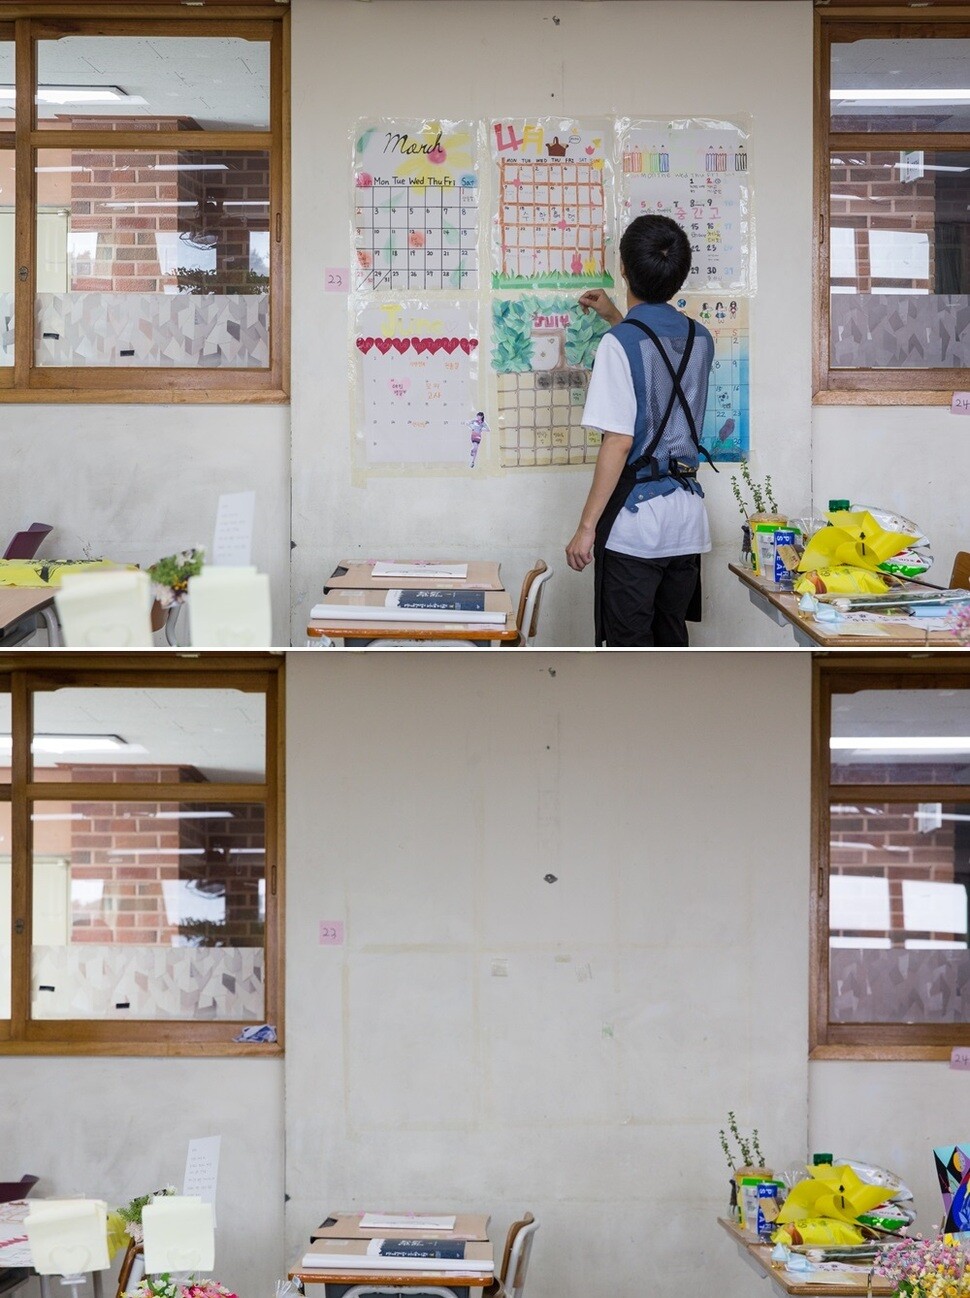 교실 한쪽 벽에 2년 전 학생들이 만들어 붙여놓은 2014년 1학기 달력을 떼어내기 전후 모습.